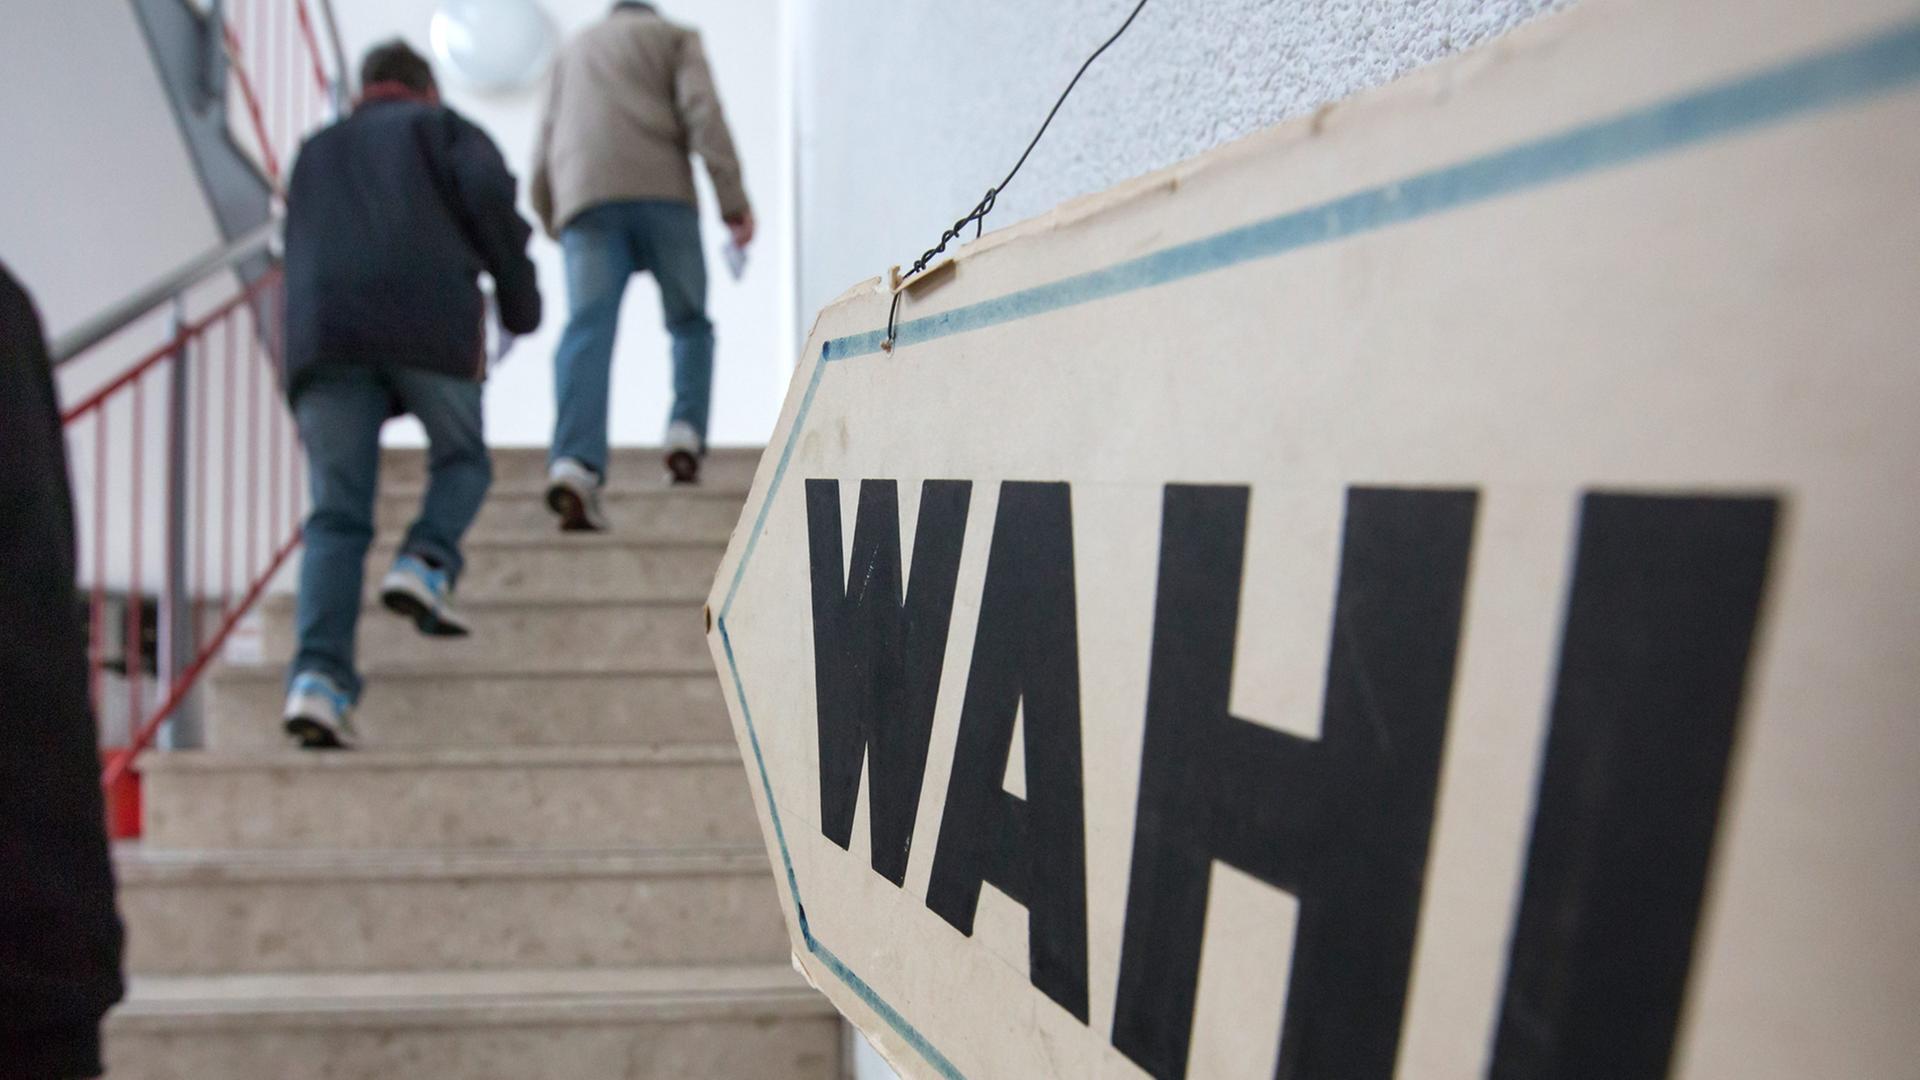 Ein Schild mit dem Wort "Wahl" hängt weist den Weg eine Treppe hinauf, Menschen gehen die Treppe hinauf